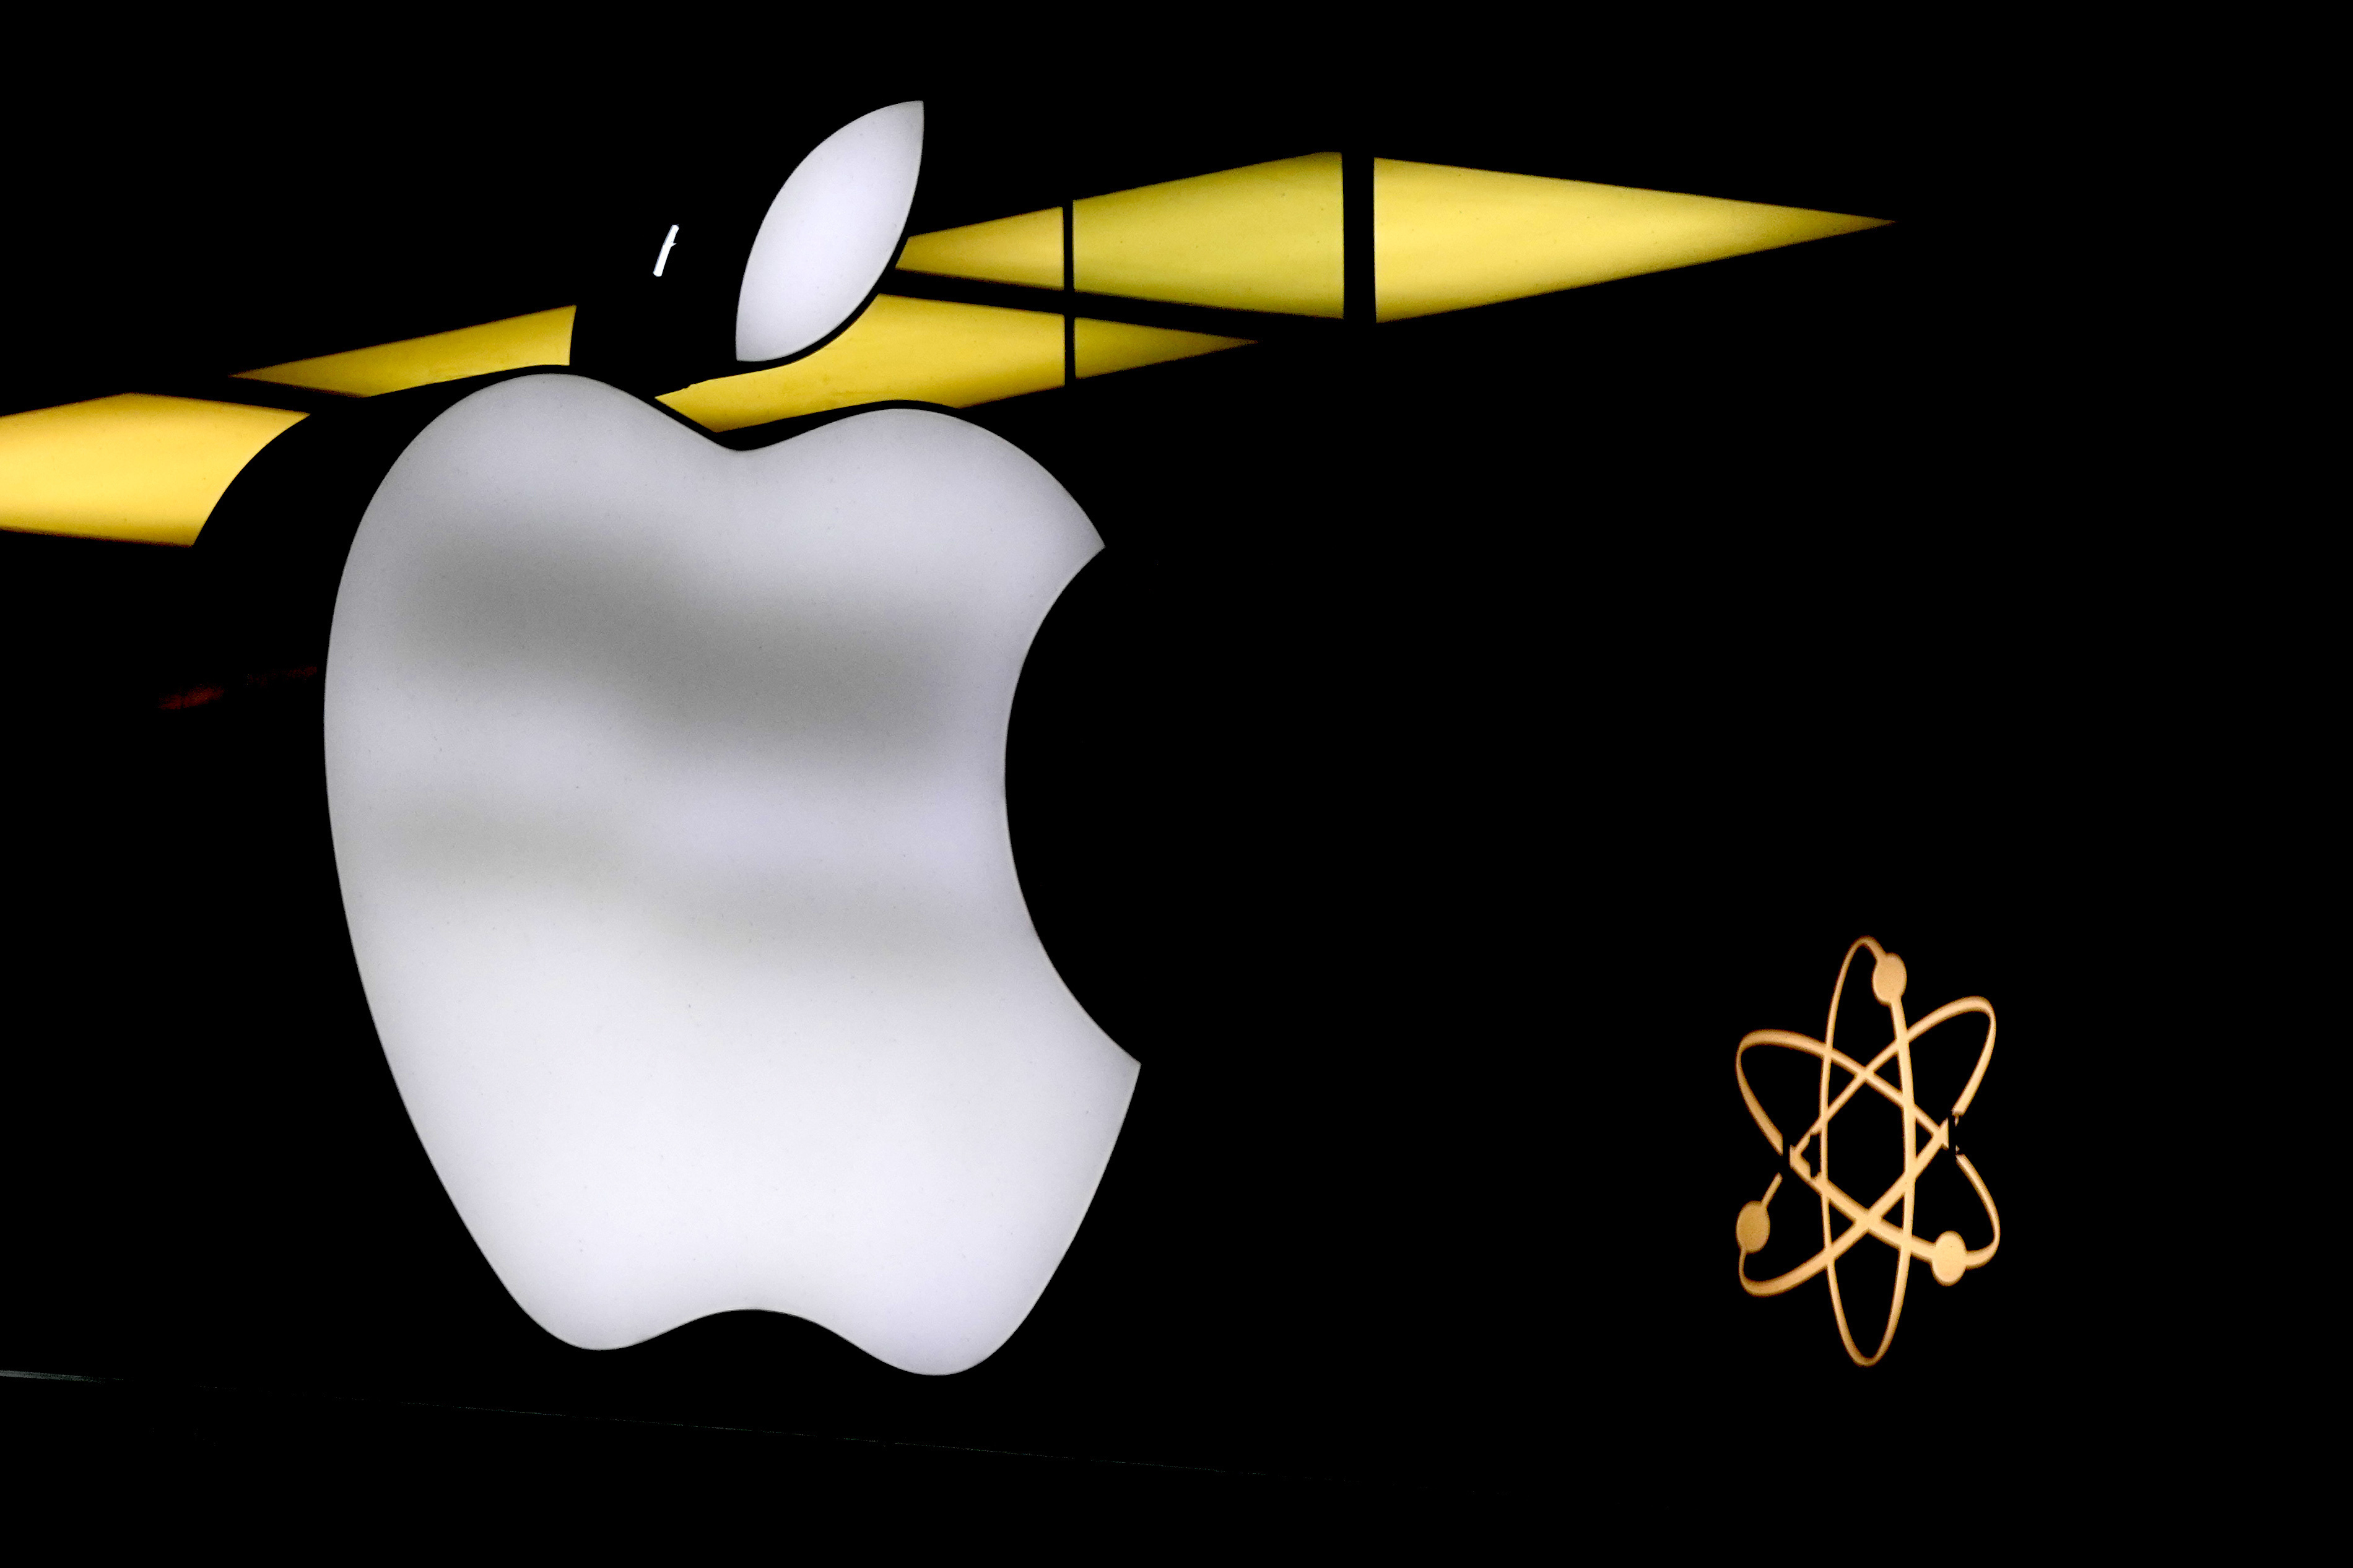 根据提交给加州当局的文件，苹果公司在加州解雇至少600名员工，这是电动车和智慧手表新萤幕研发项目决定喊停时的其中一环。美联社